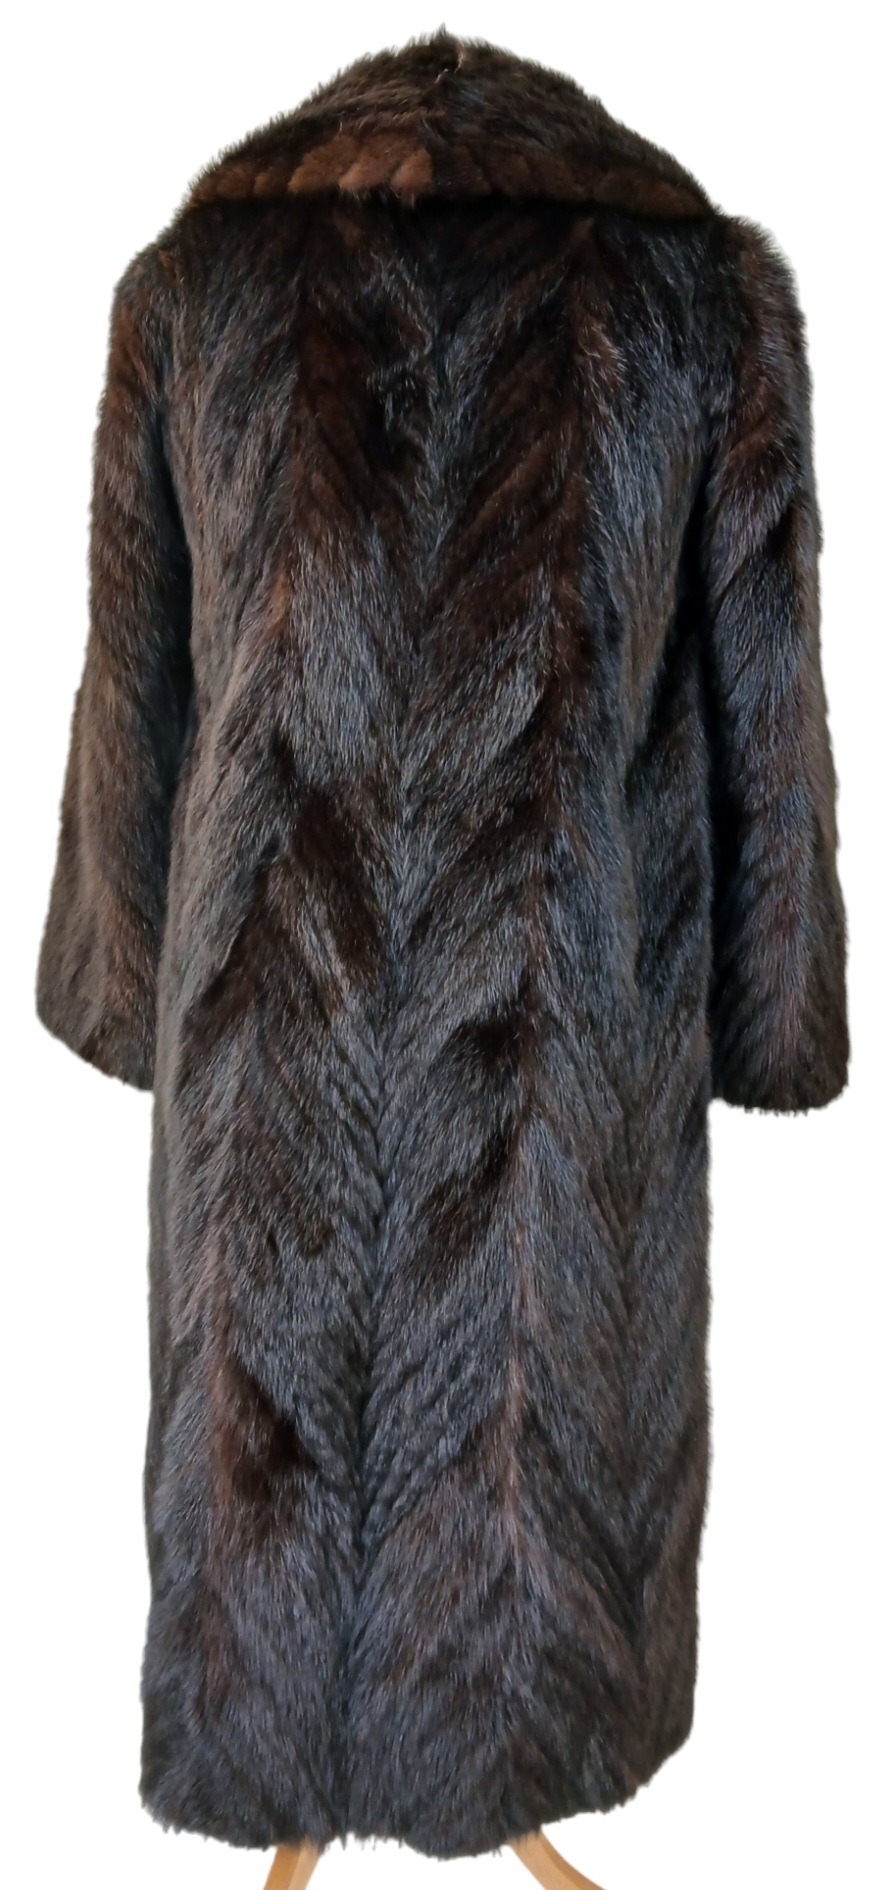 A Vintage Full Length Fur Coat - Possibly Mink/Sable. - Image 3 of 7